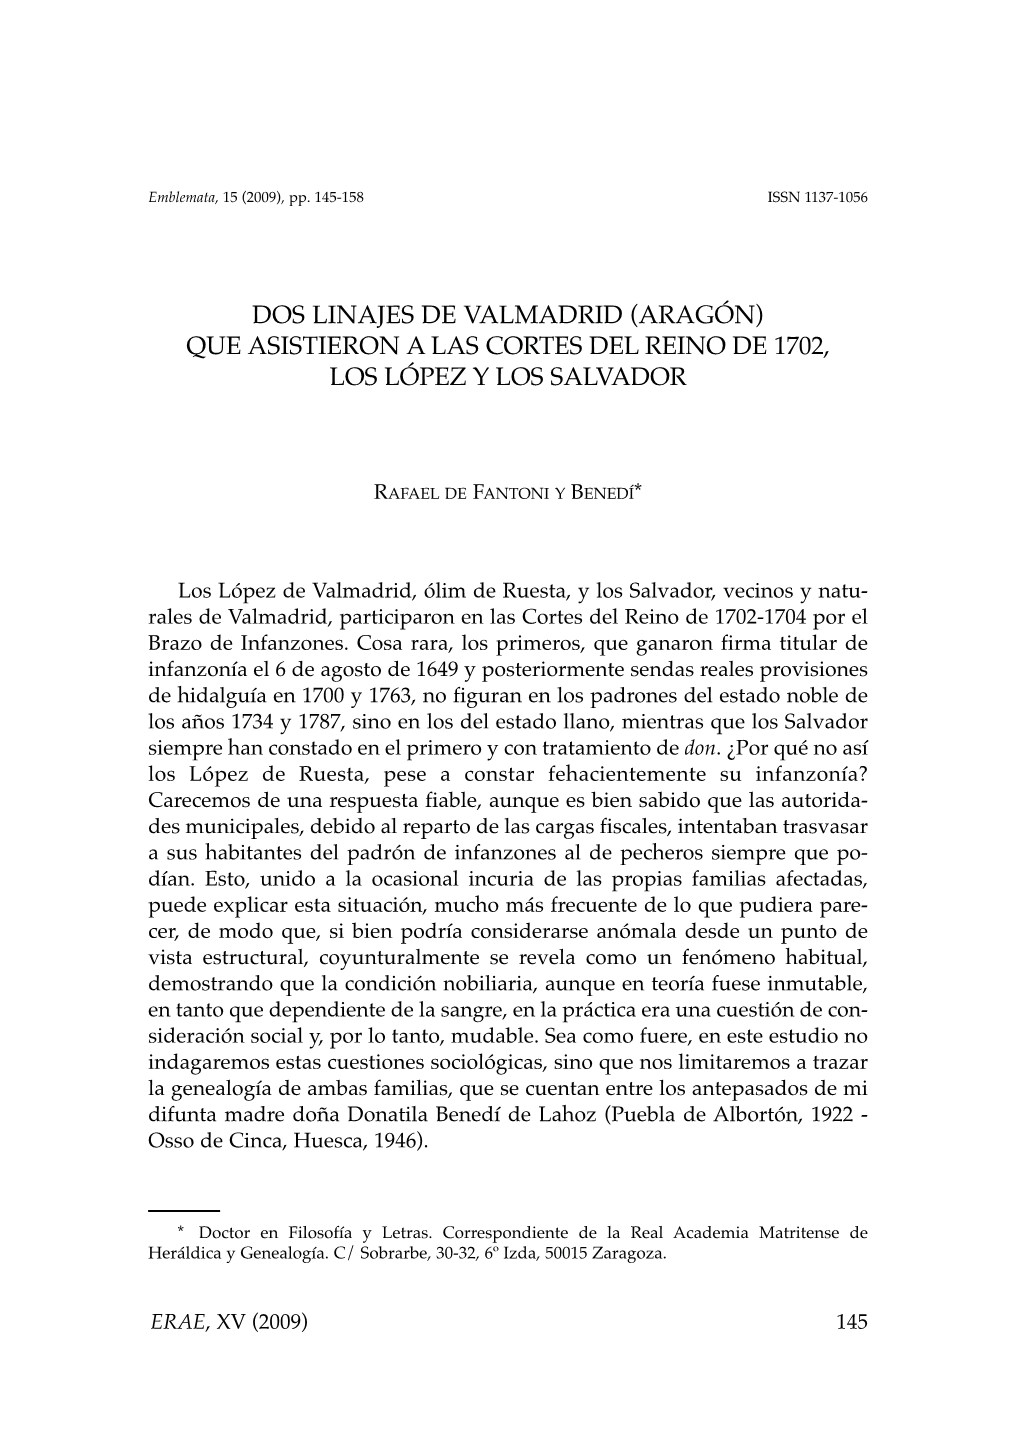 Dos Linajes De Valmadrid (Aragón) Que Asistieron a Las Cortes Del Reino De 1702, Los López Y Los Salvador